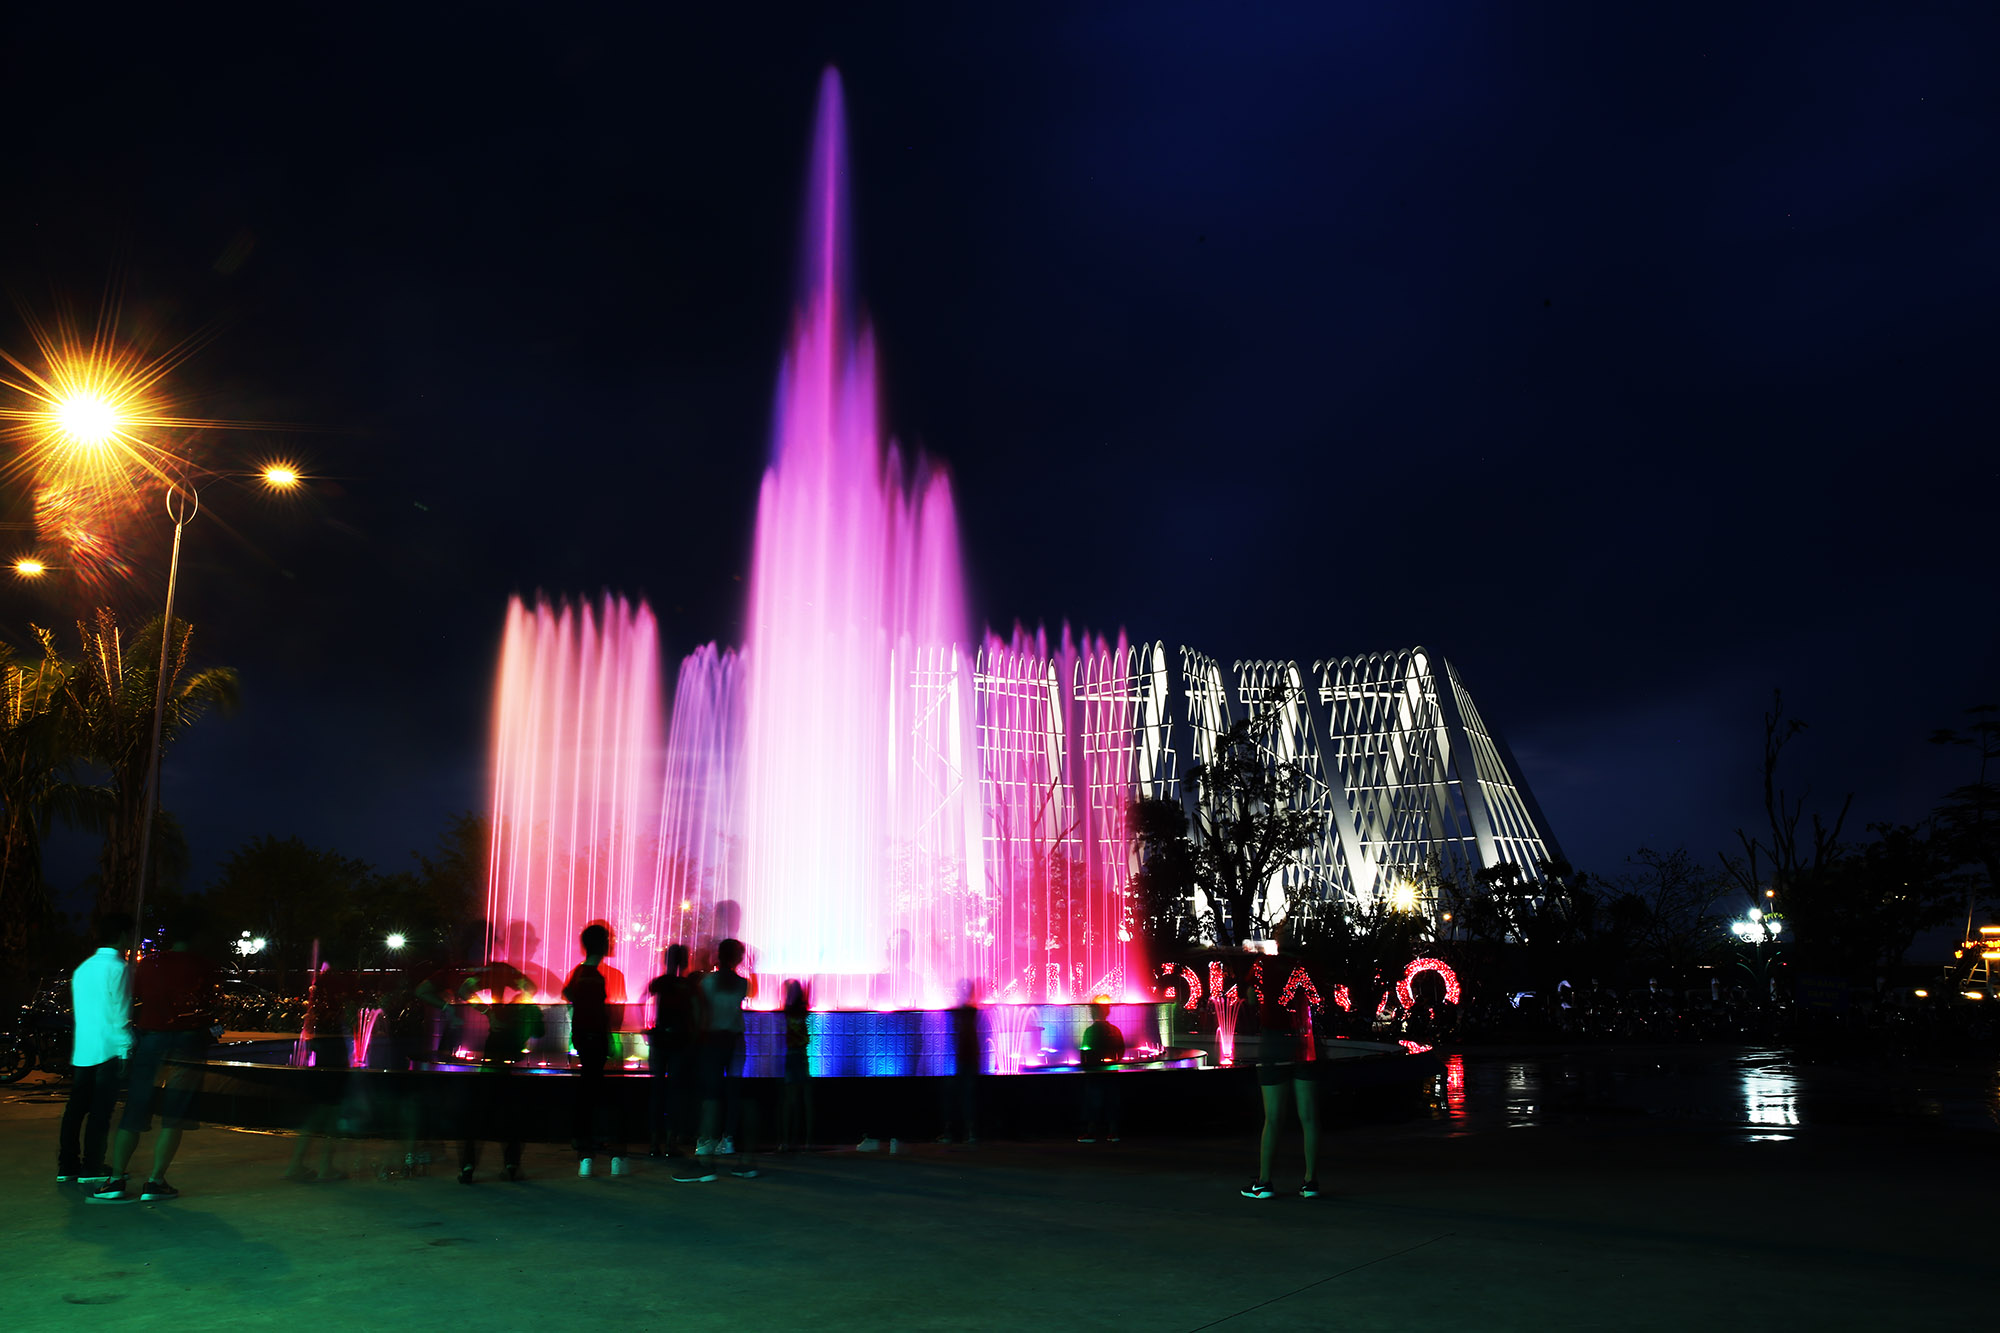 Đón chào du khách đến với khu du lịch Quảng Ninh Gate, đến với Lễ hội ánh sáng là thác nước với muôn vàn màu sắc.